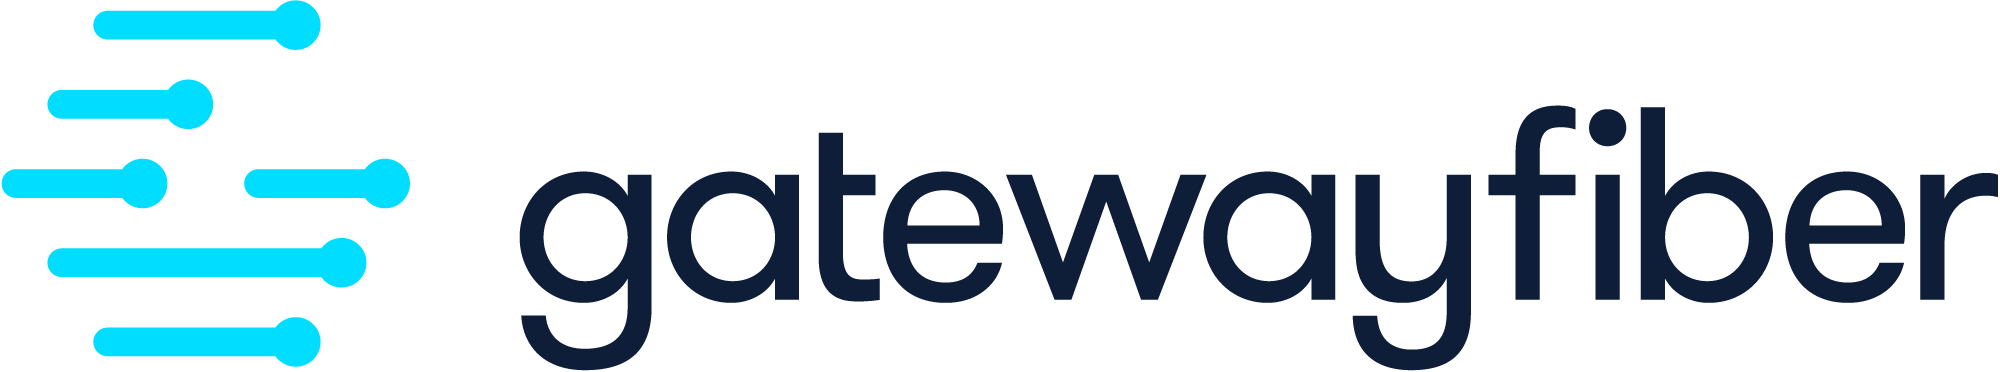 The logo file for Gateway Fiber high-speed internet provider. 